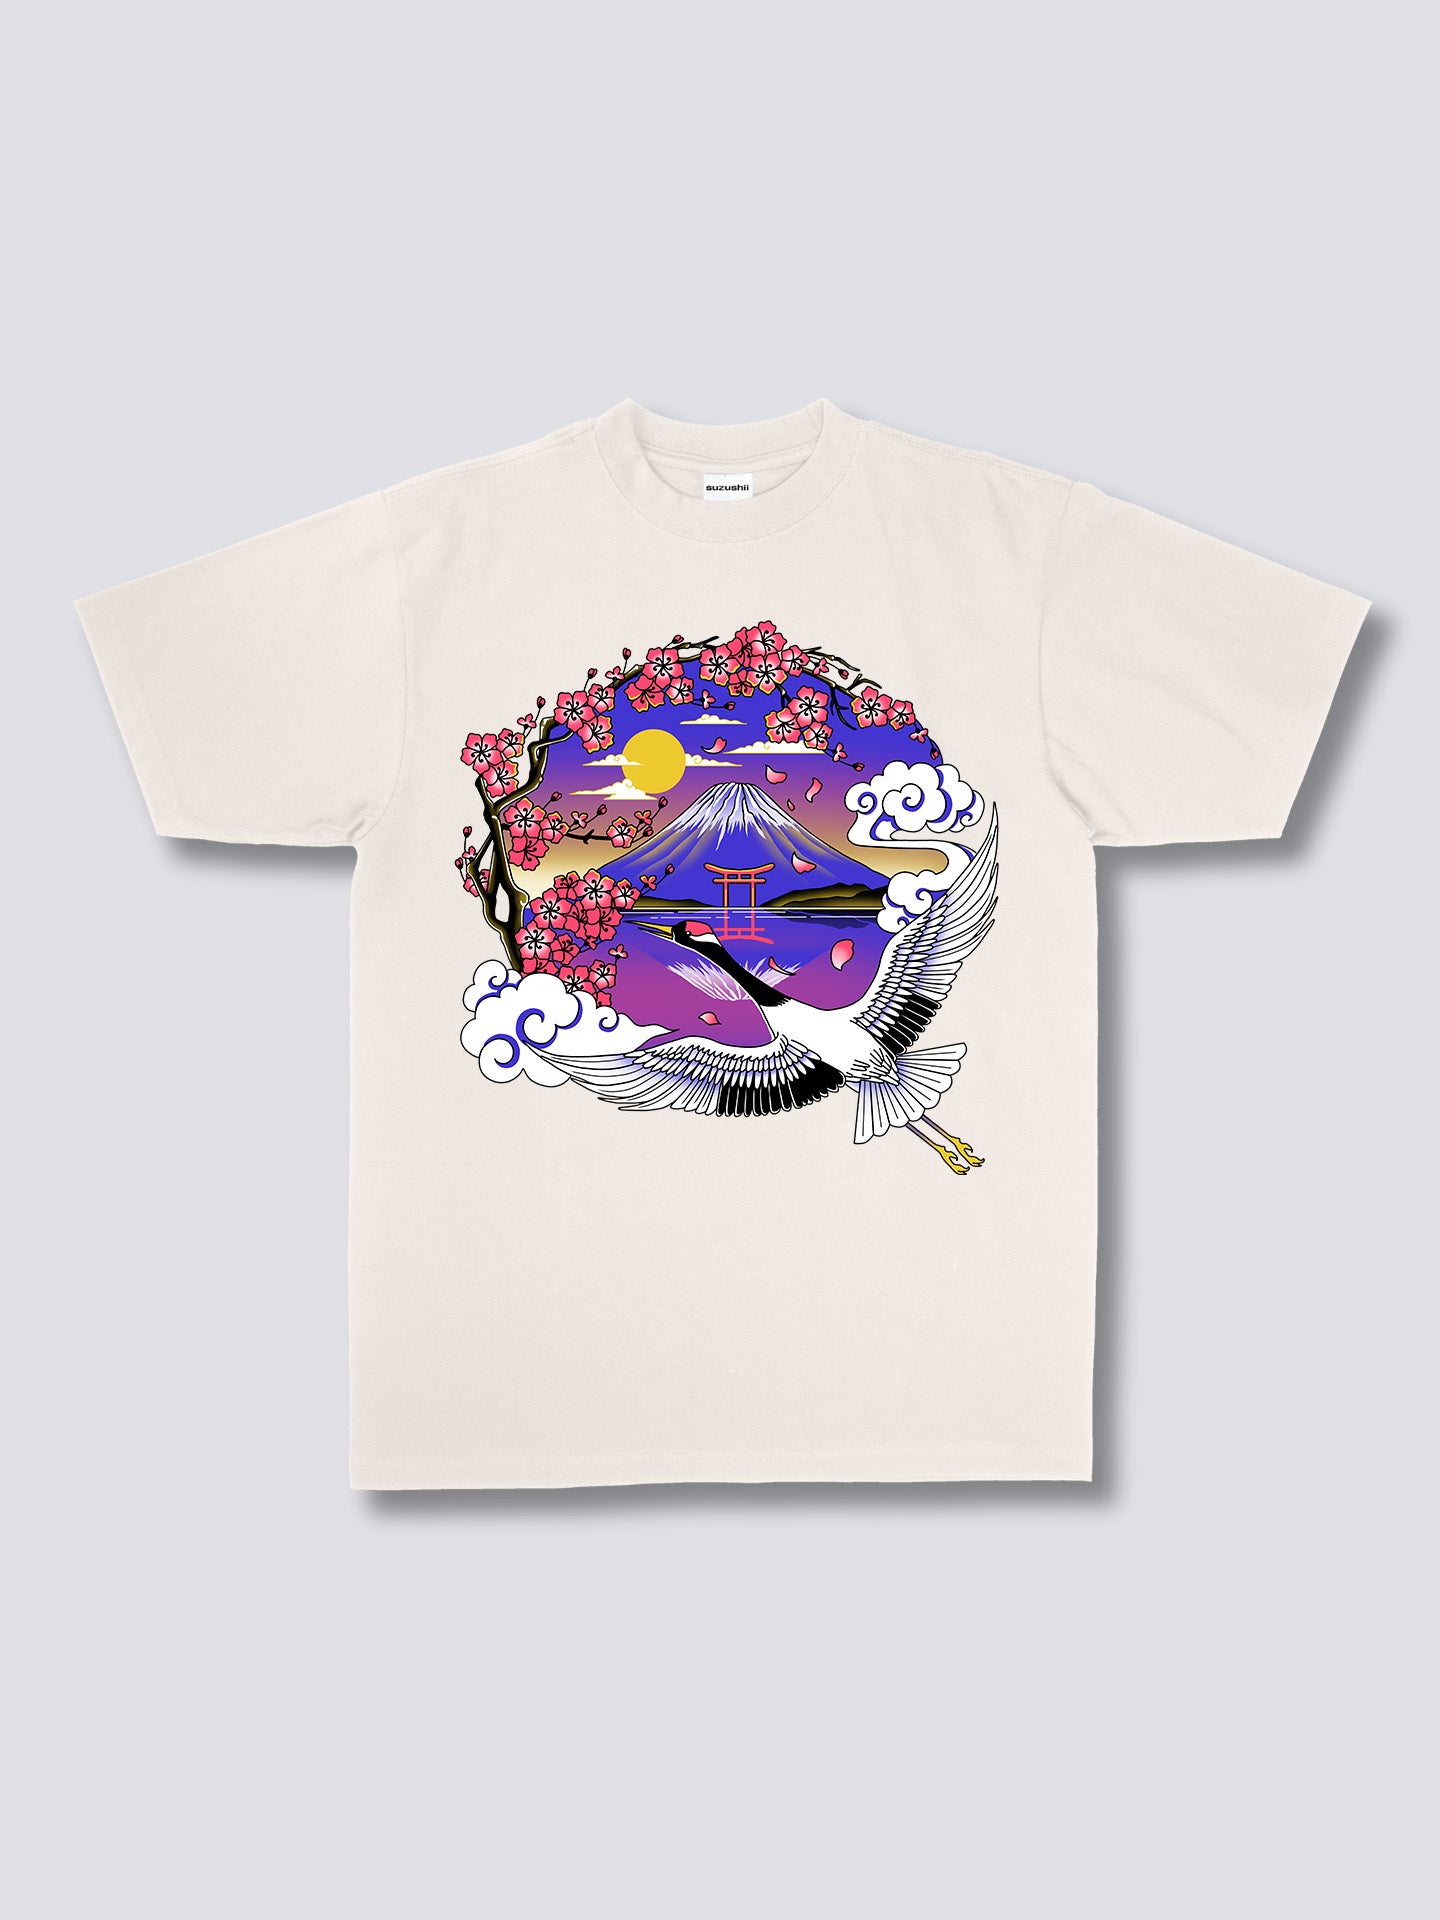 Mount Fuji Crane T-Shirt